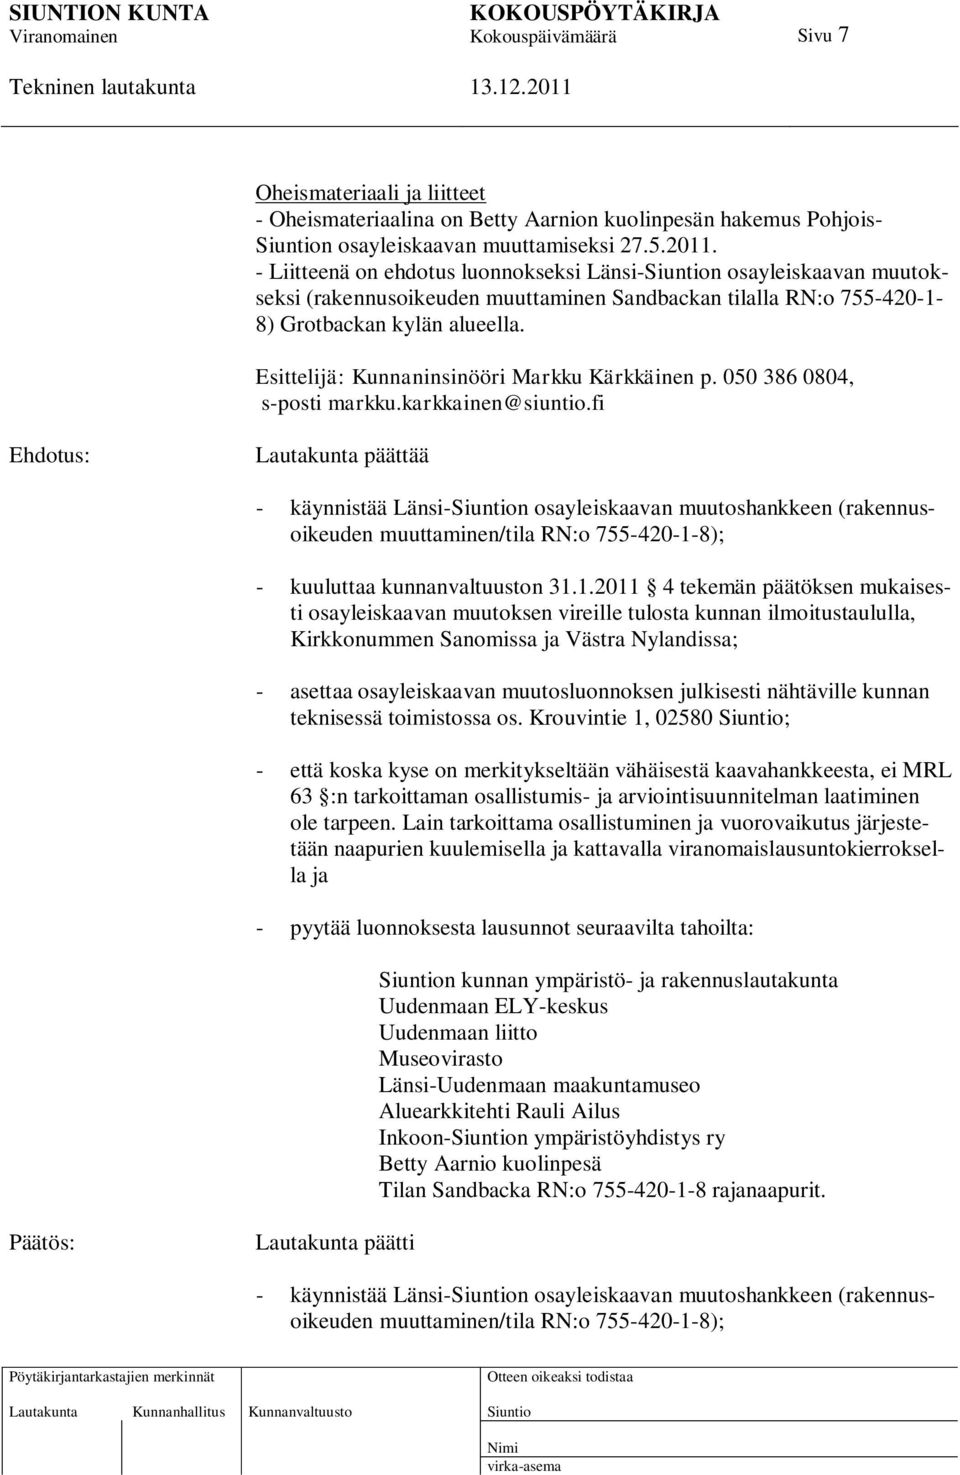 Esittelijä: Kunnaninsinööri Markku Kärkkäinen p. 050 386 0804, s-posti markku.karkkainen@siuntio.